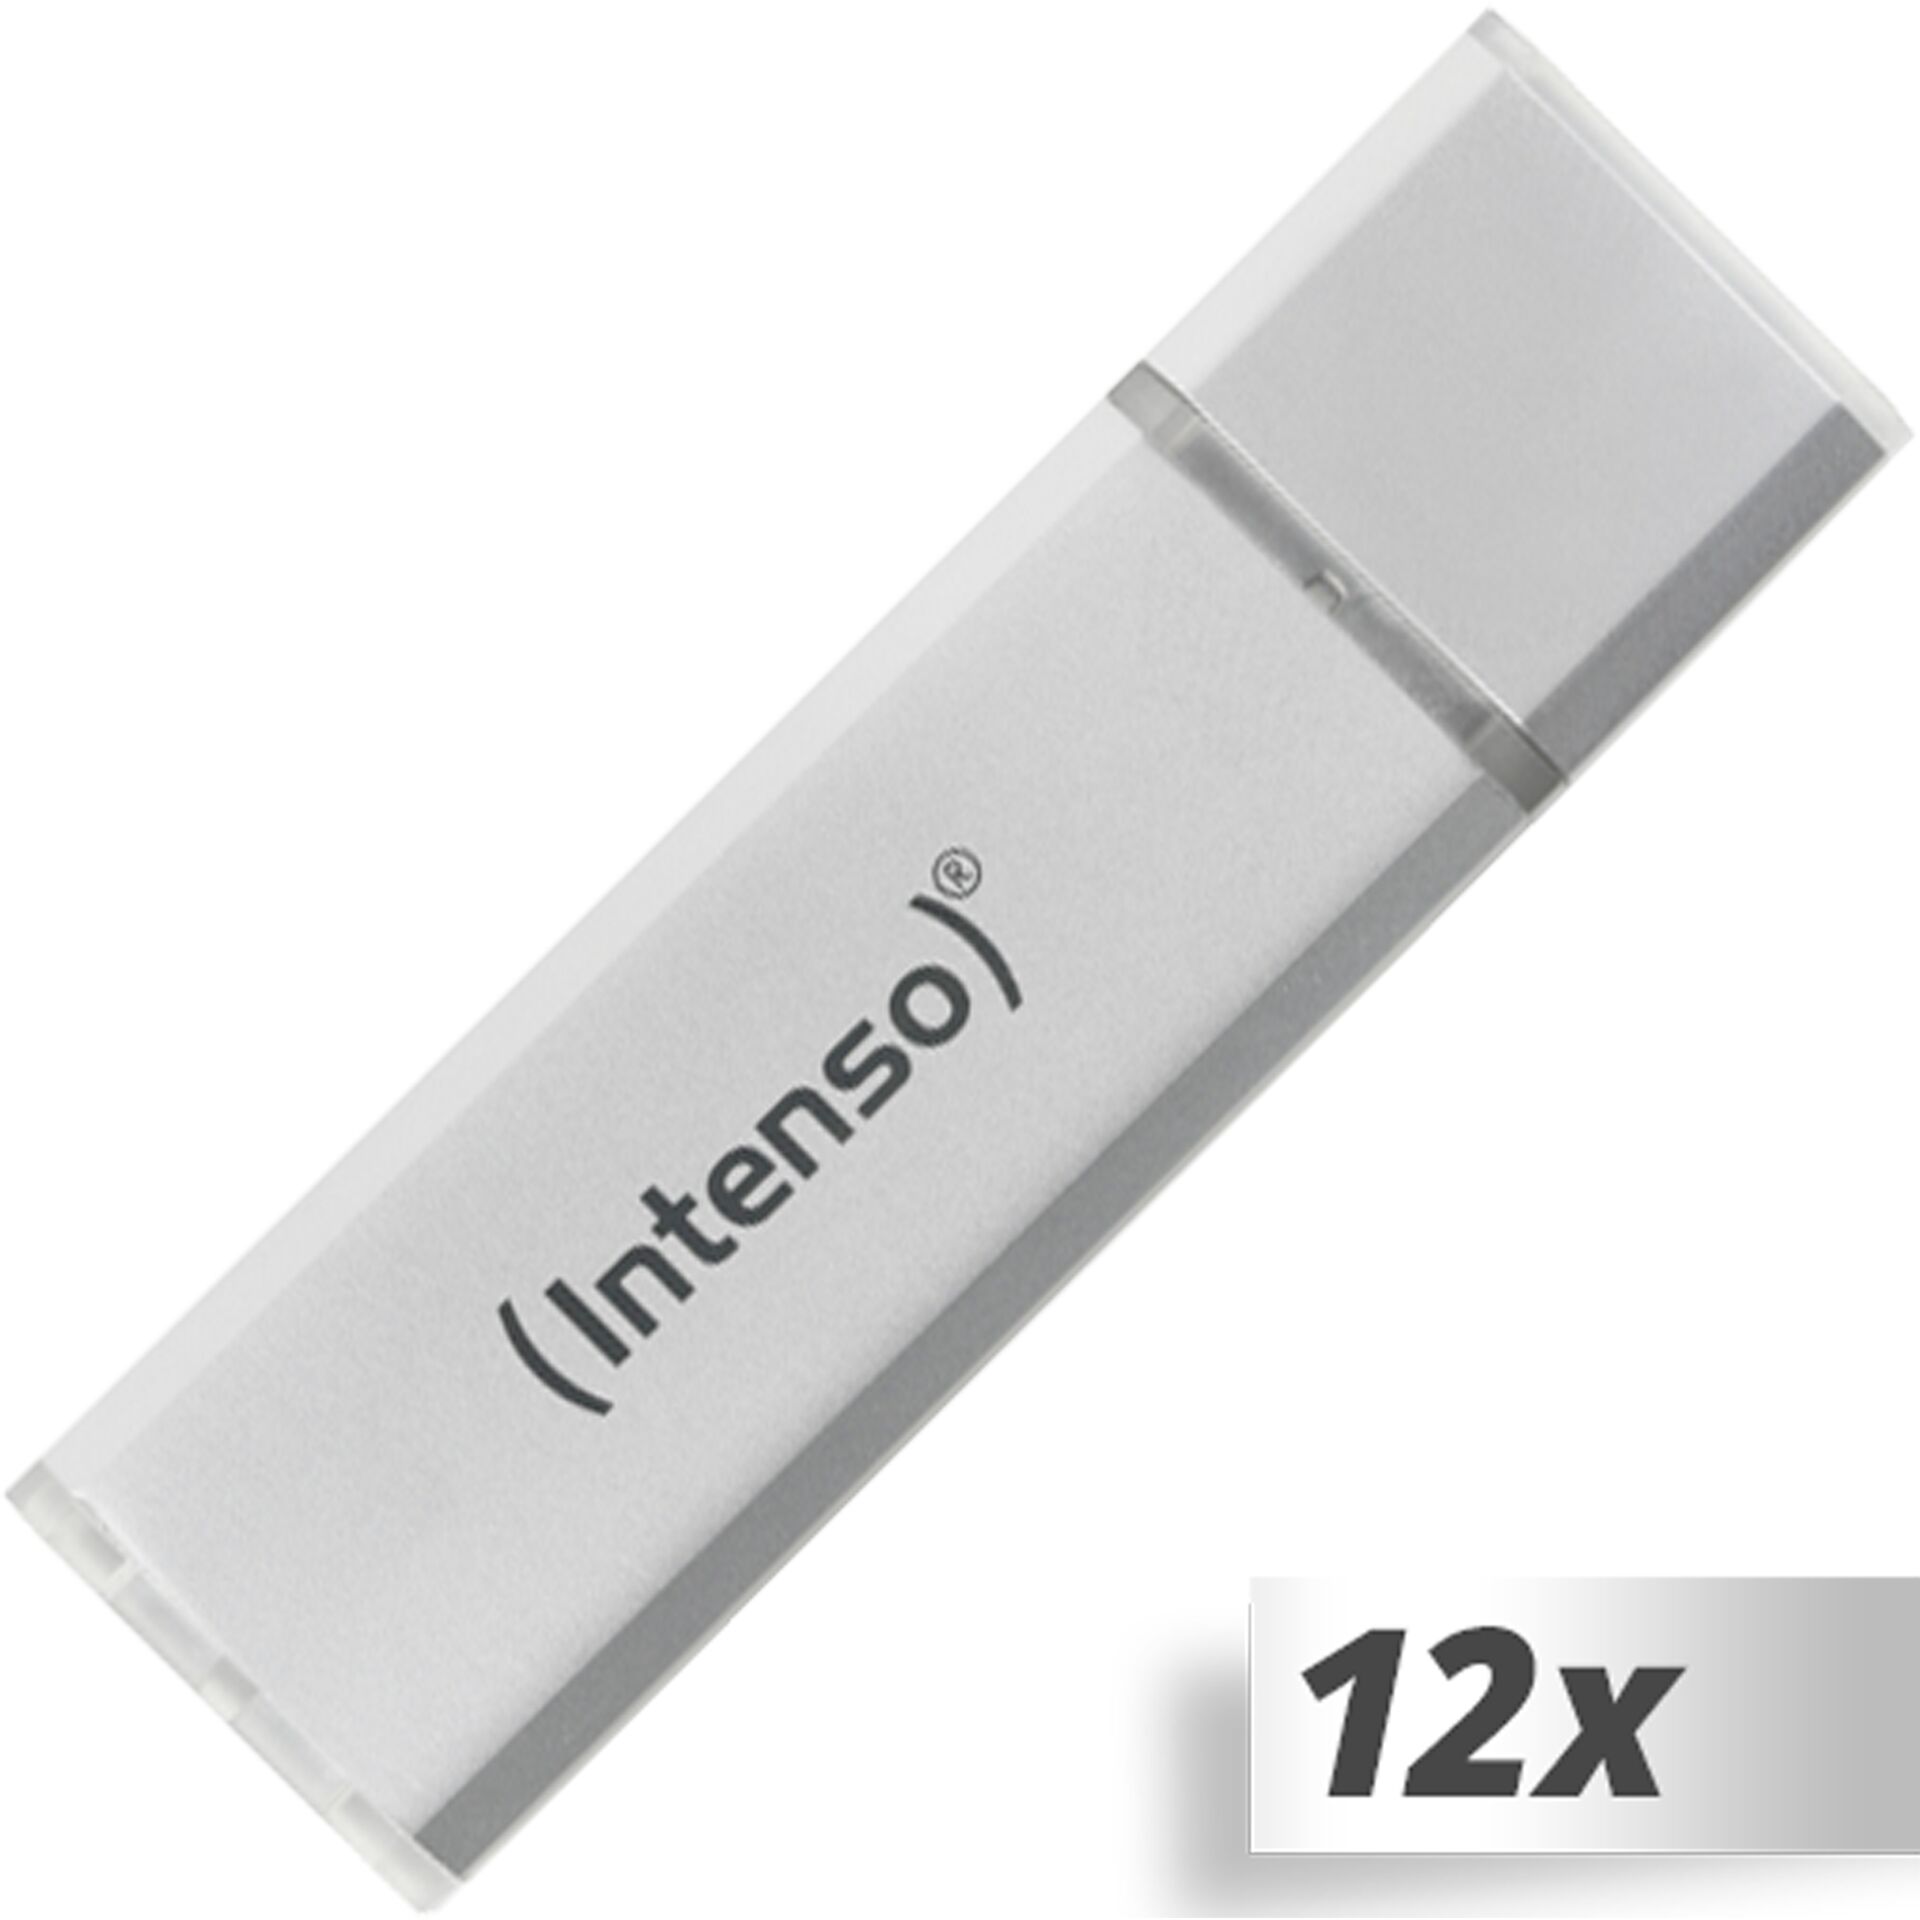 10x1 Intenso Alu Line       16GB USB Stick 2.0 argento